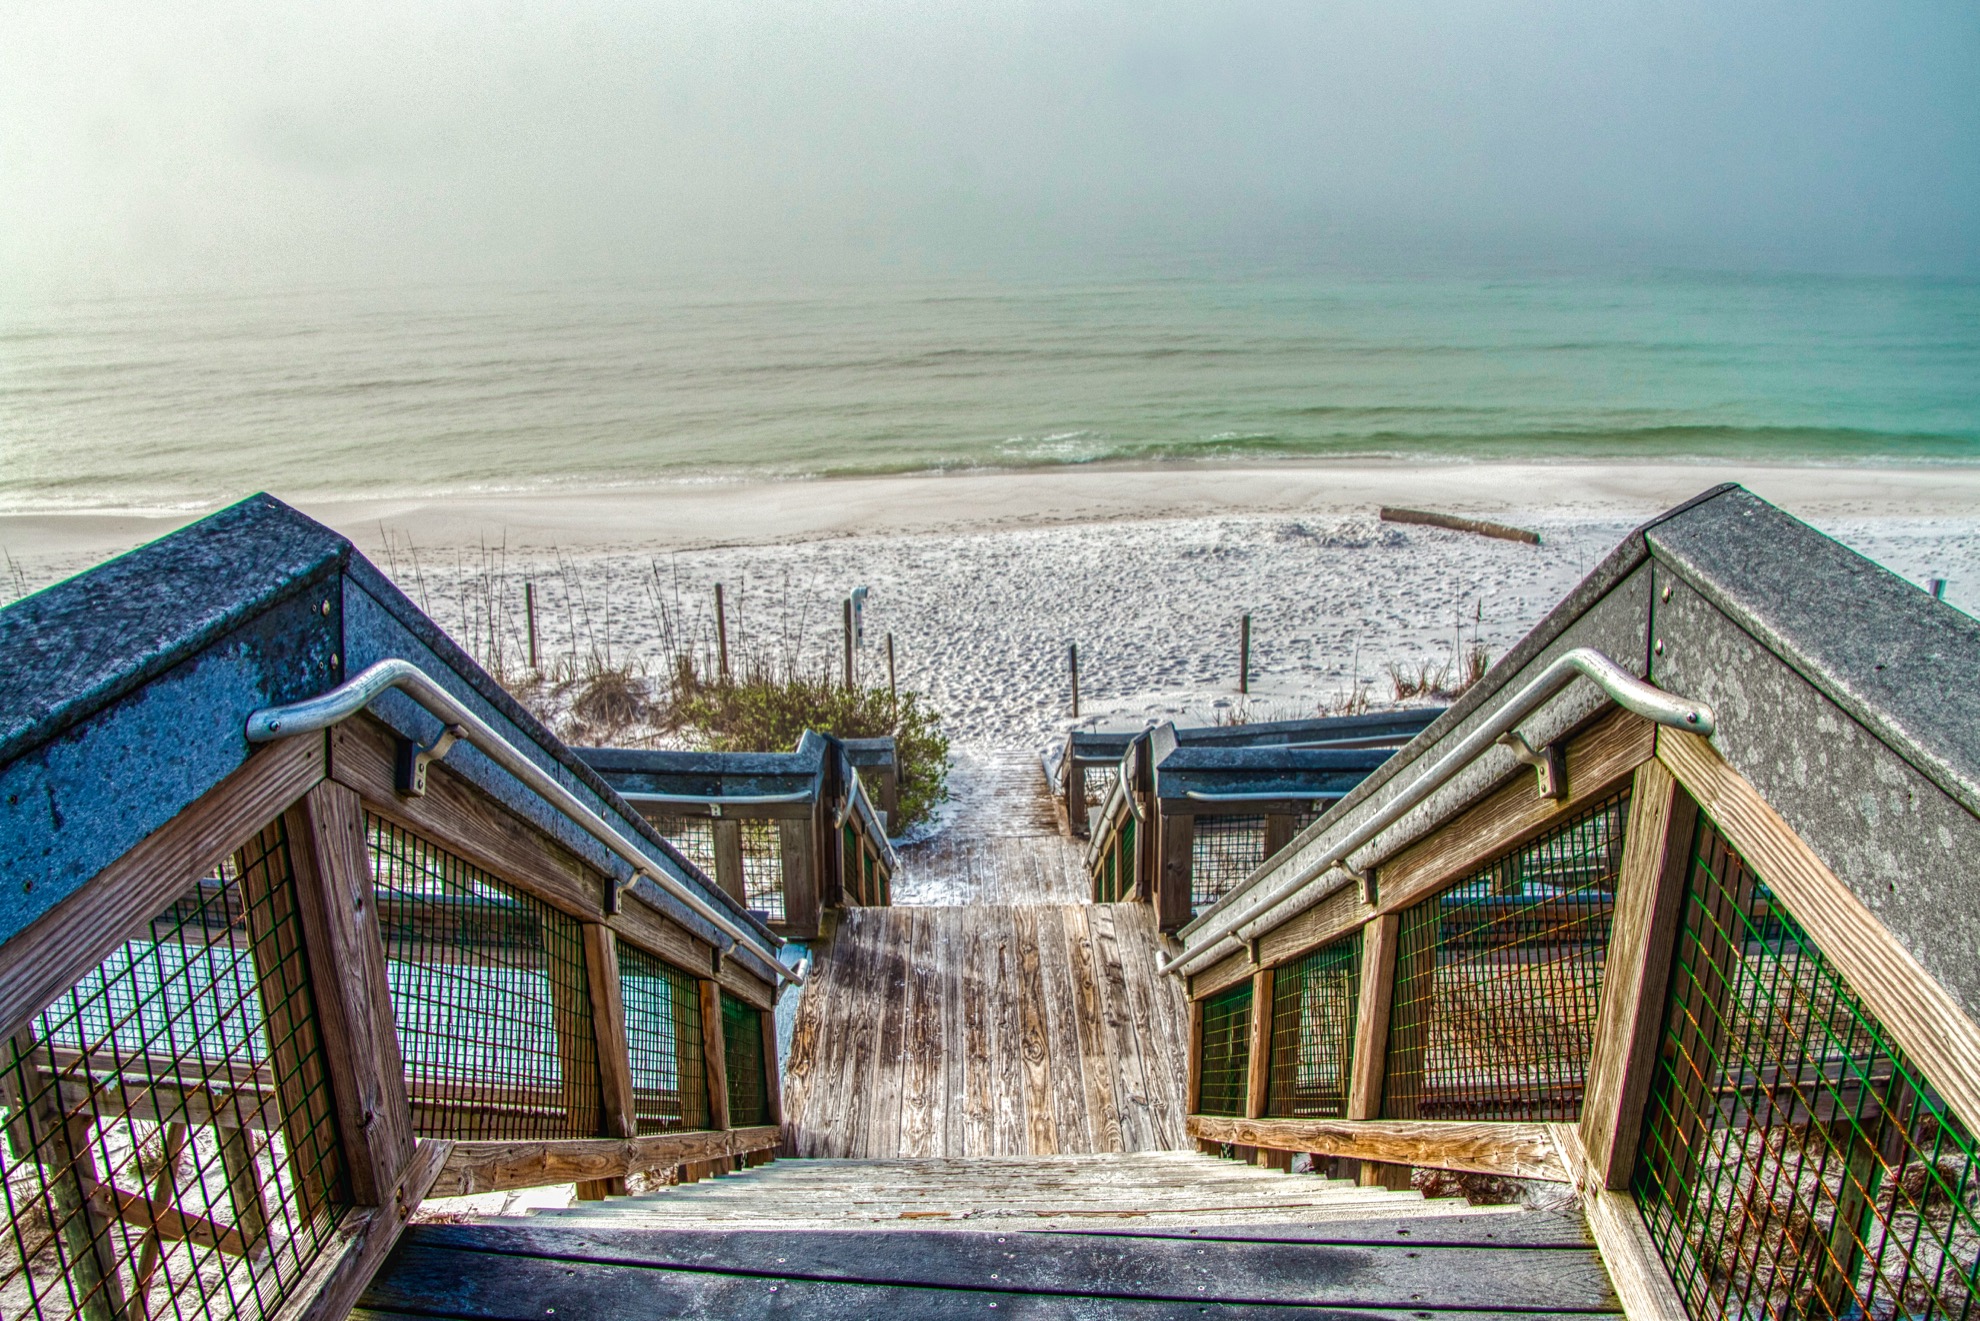 Las 10 mejores playas de Estados Unidos en 2019 según el Dr. Beach - 19